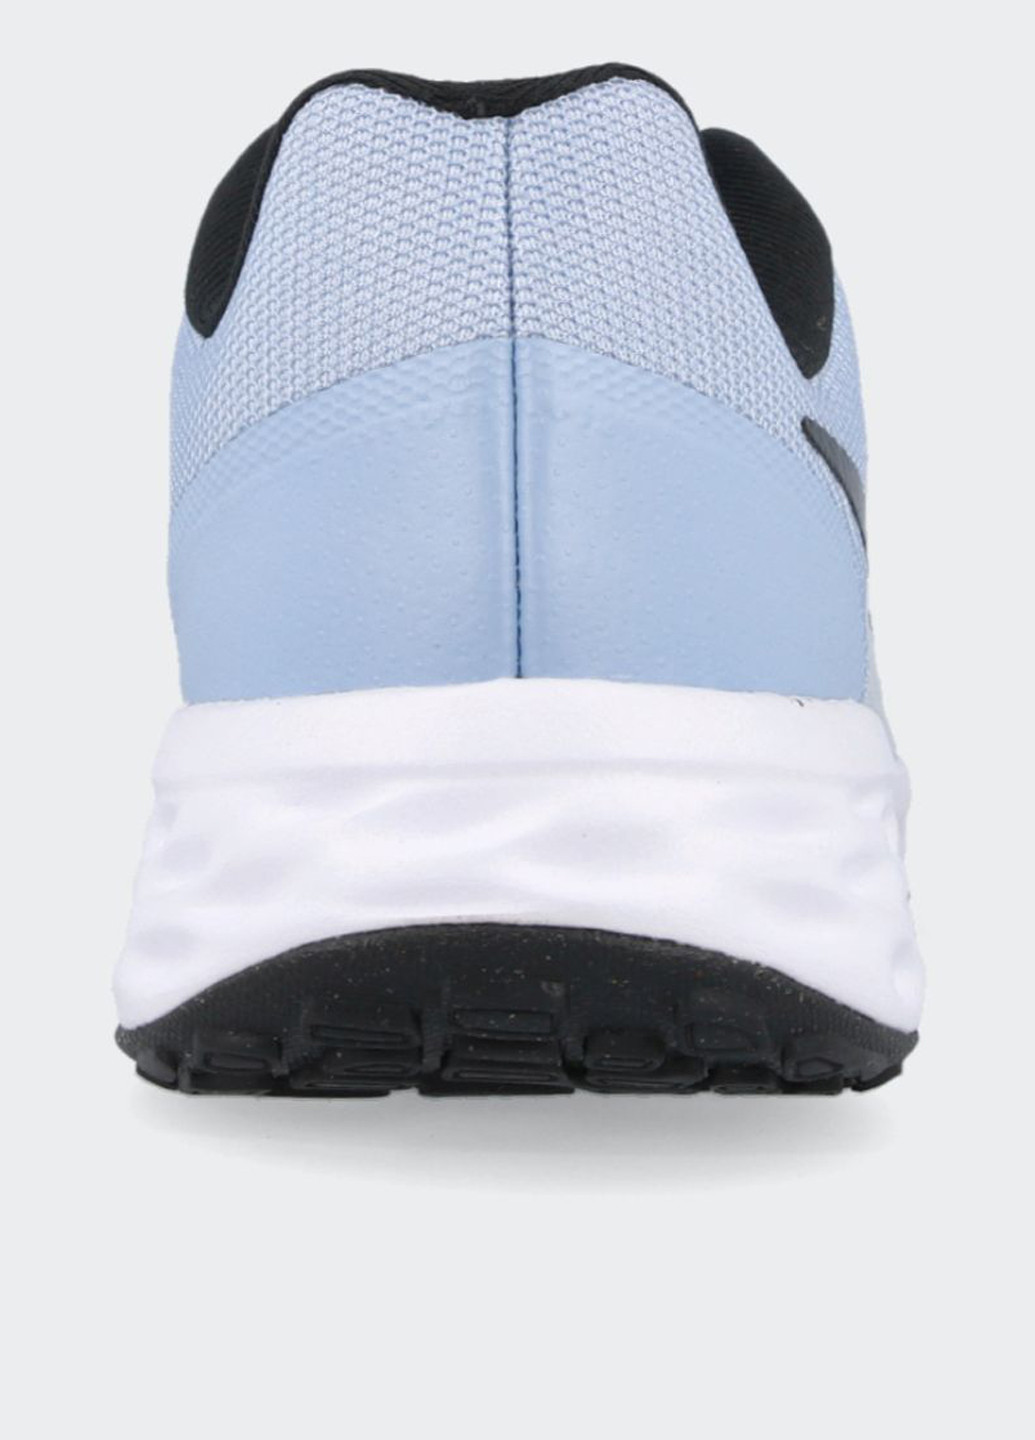 Светло-голубые всесезонные кроссовки Nike Revolution 6